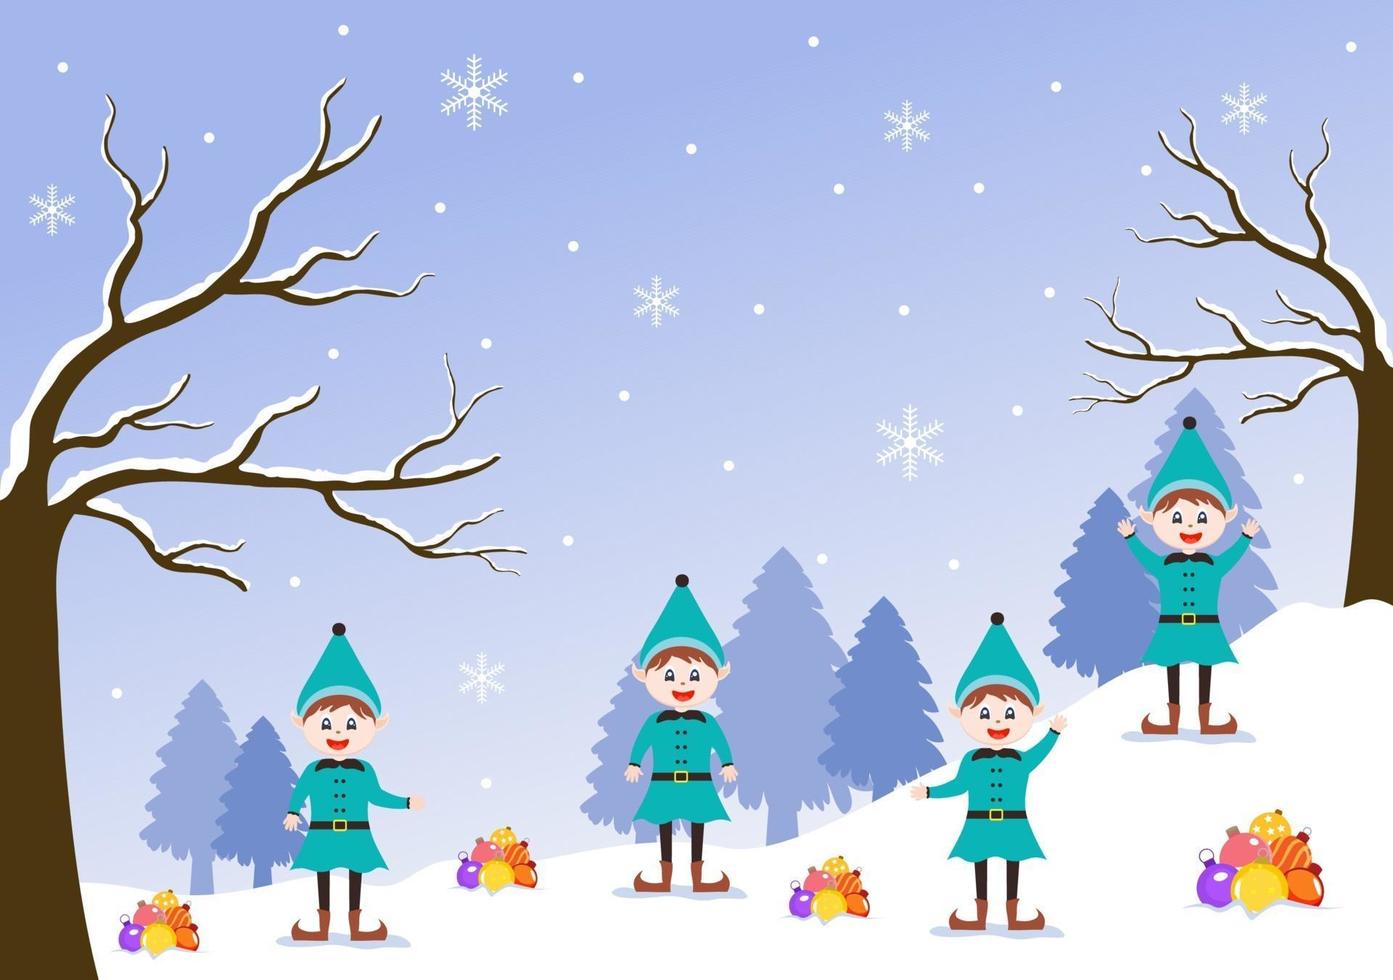 feliz navidad enano de dibujos animados lindo, santa claus y elfos vector